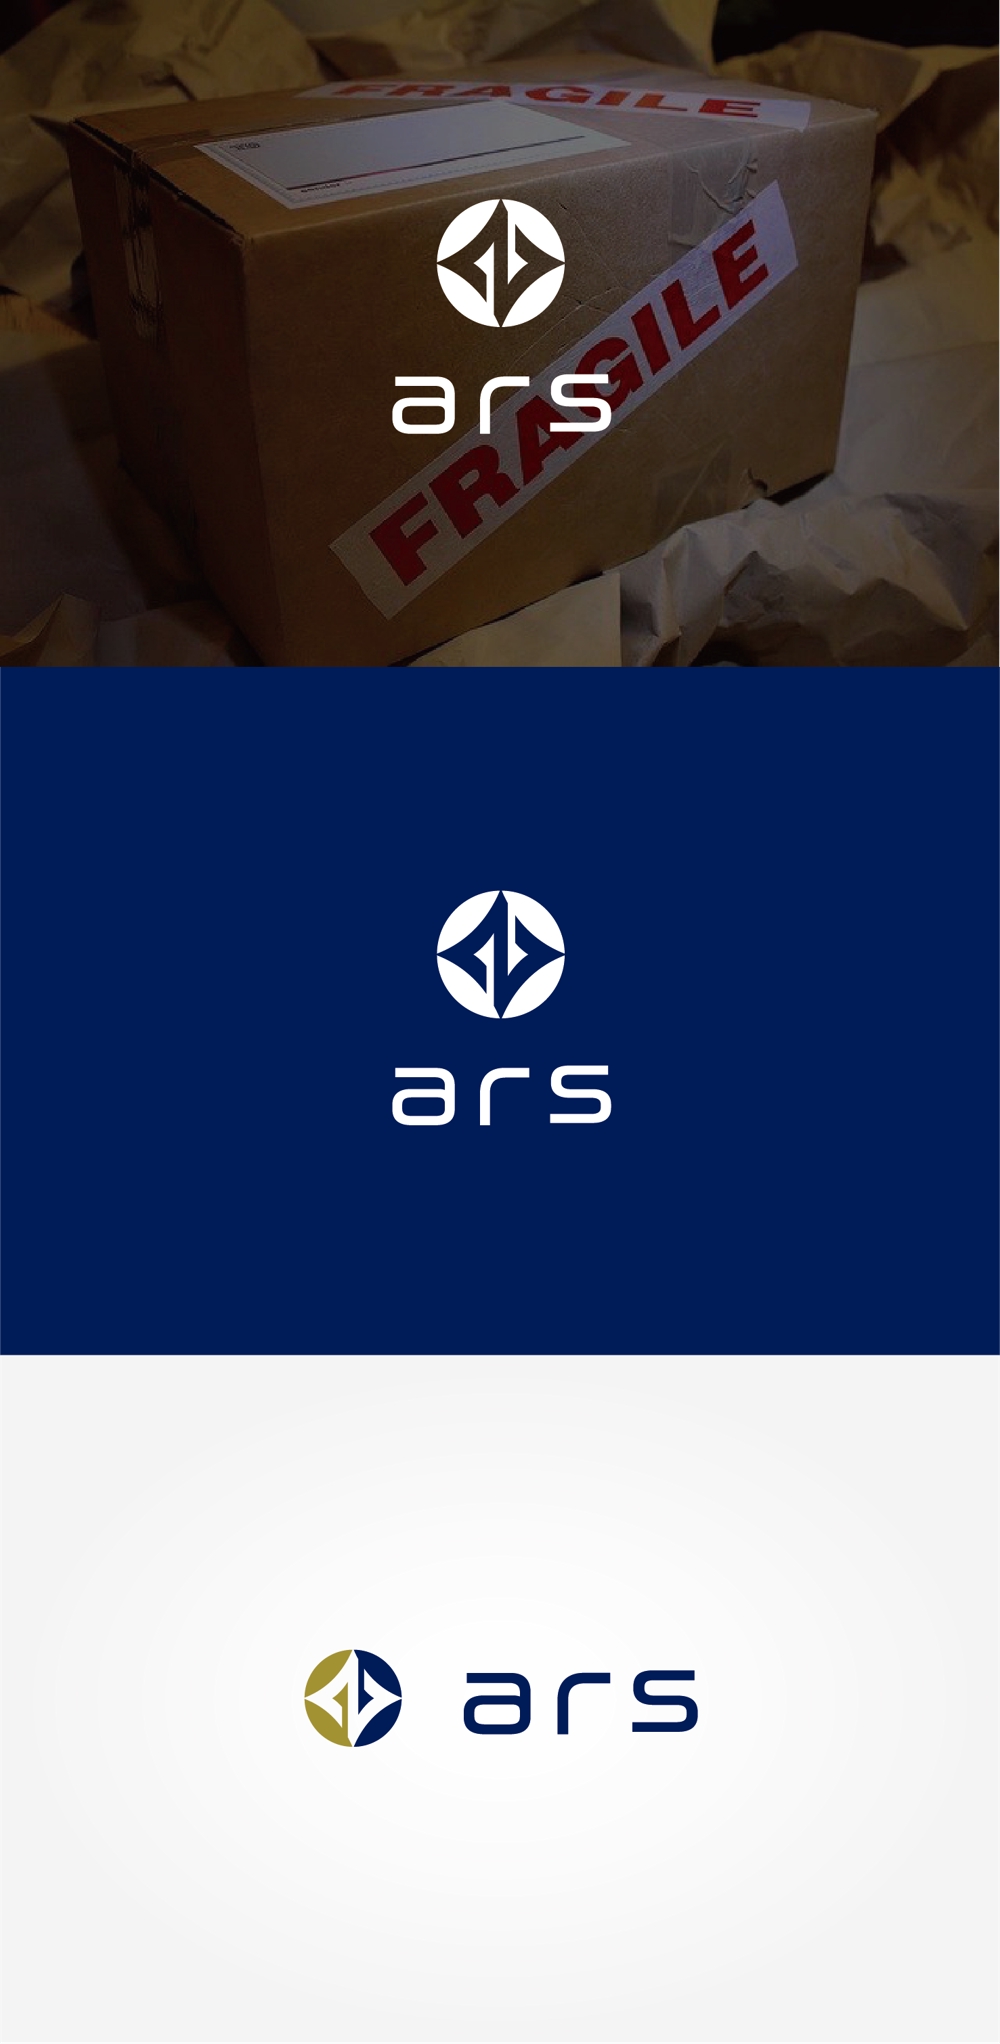 軽貨物運送業「株式会社ars」の会社ロゴ 